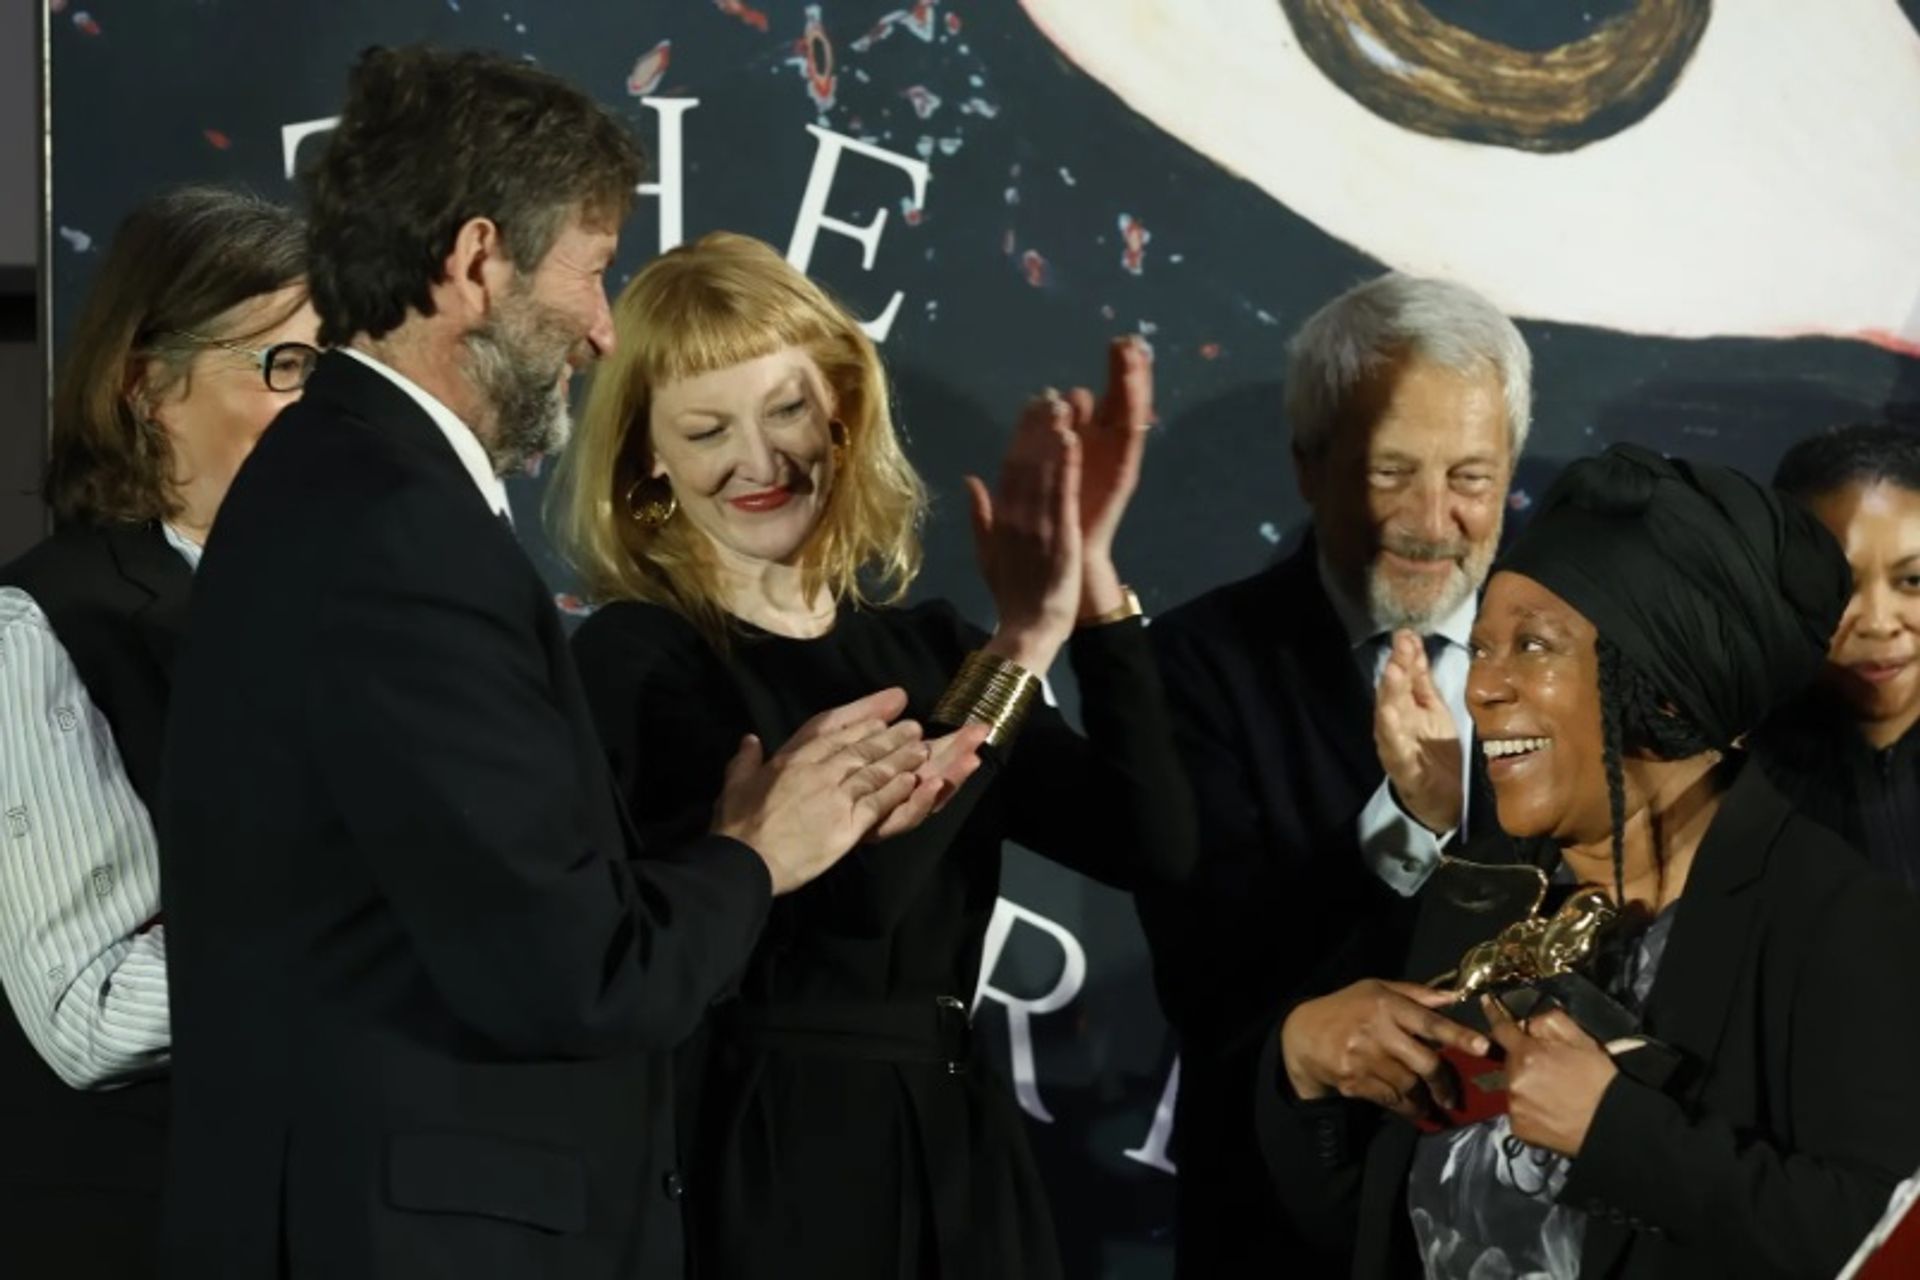 סוניה בויס מקבלת את פרס אריה הזהב עבור ההשתתפות הלאומית הטובה ביותר בביאנלה בוונציה

צילום: Andrea Avezzù; באדיבות La Biennale di Venezia